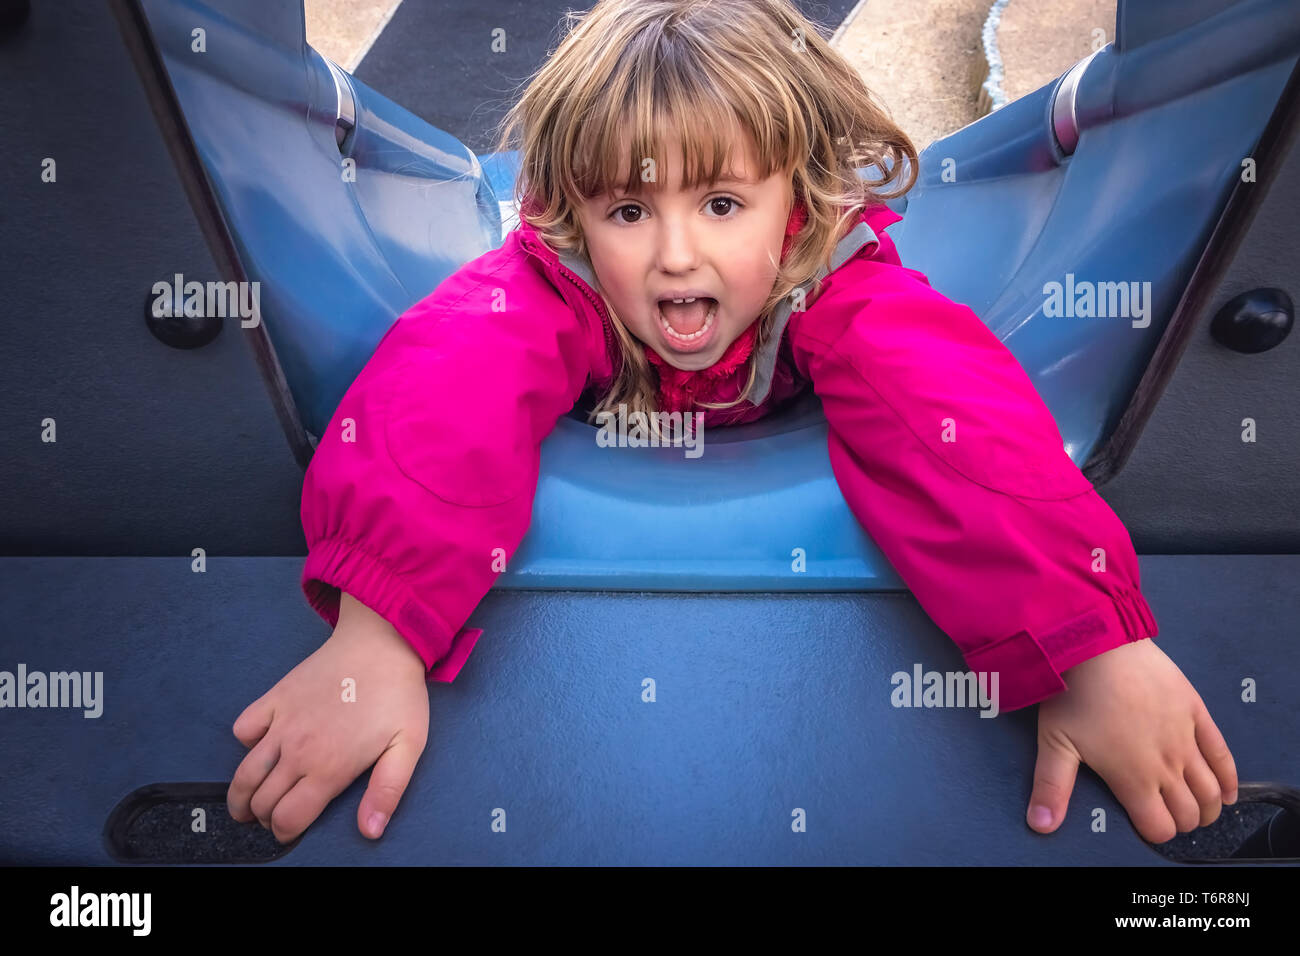 Girl falling down the slide Stock Photo